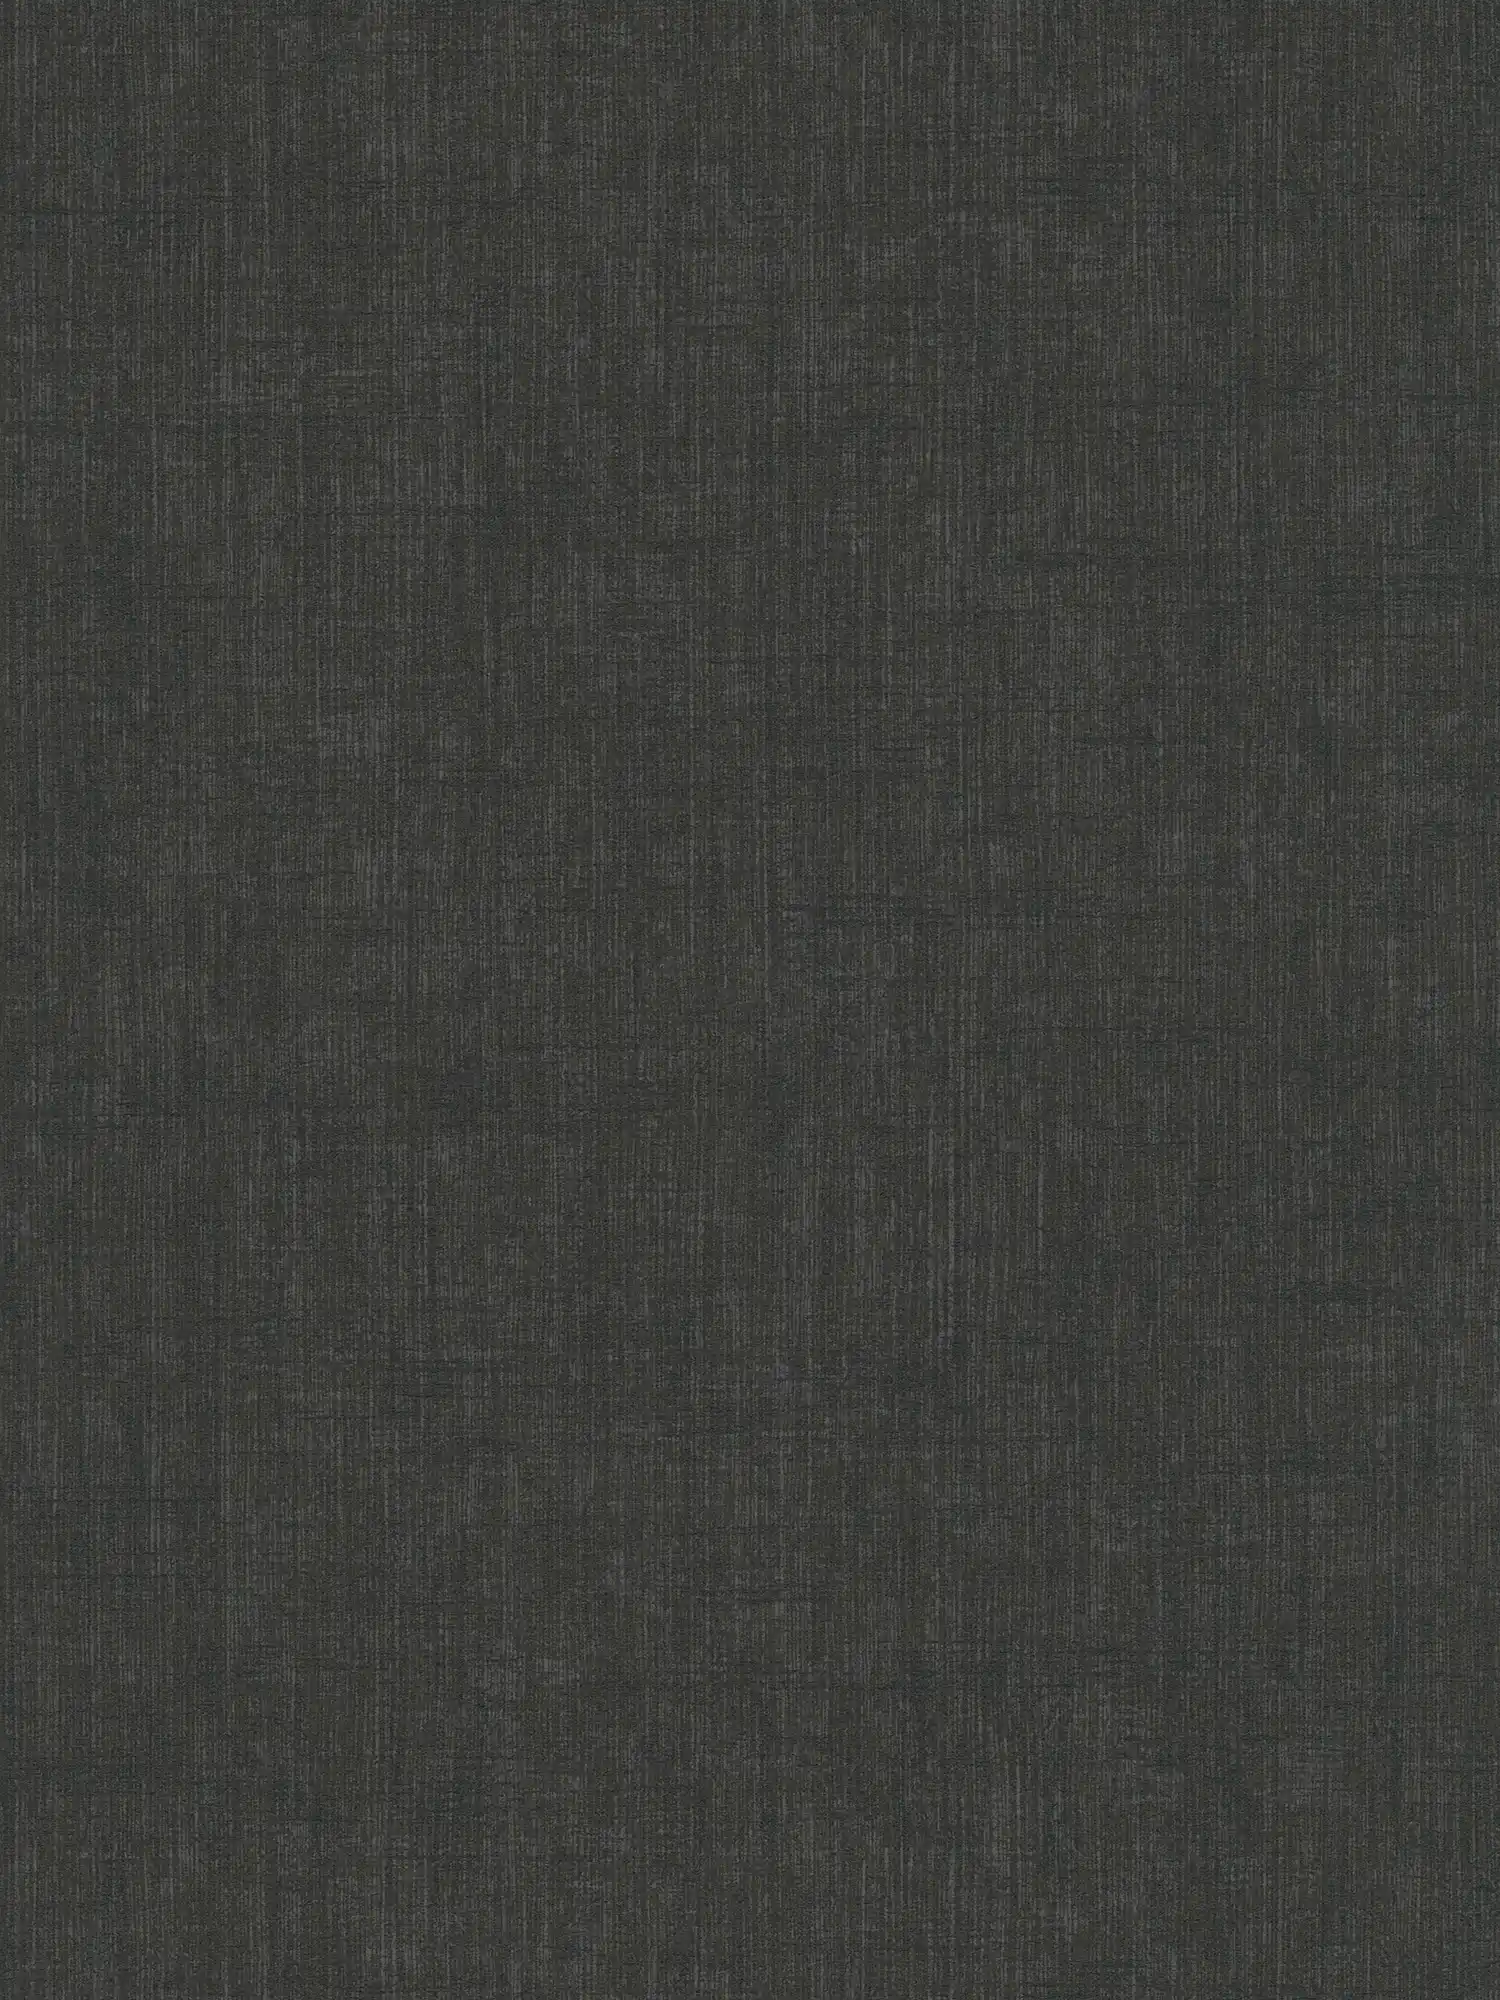 Papel pintado negro de tejido no tejido con un patrón textil suave
